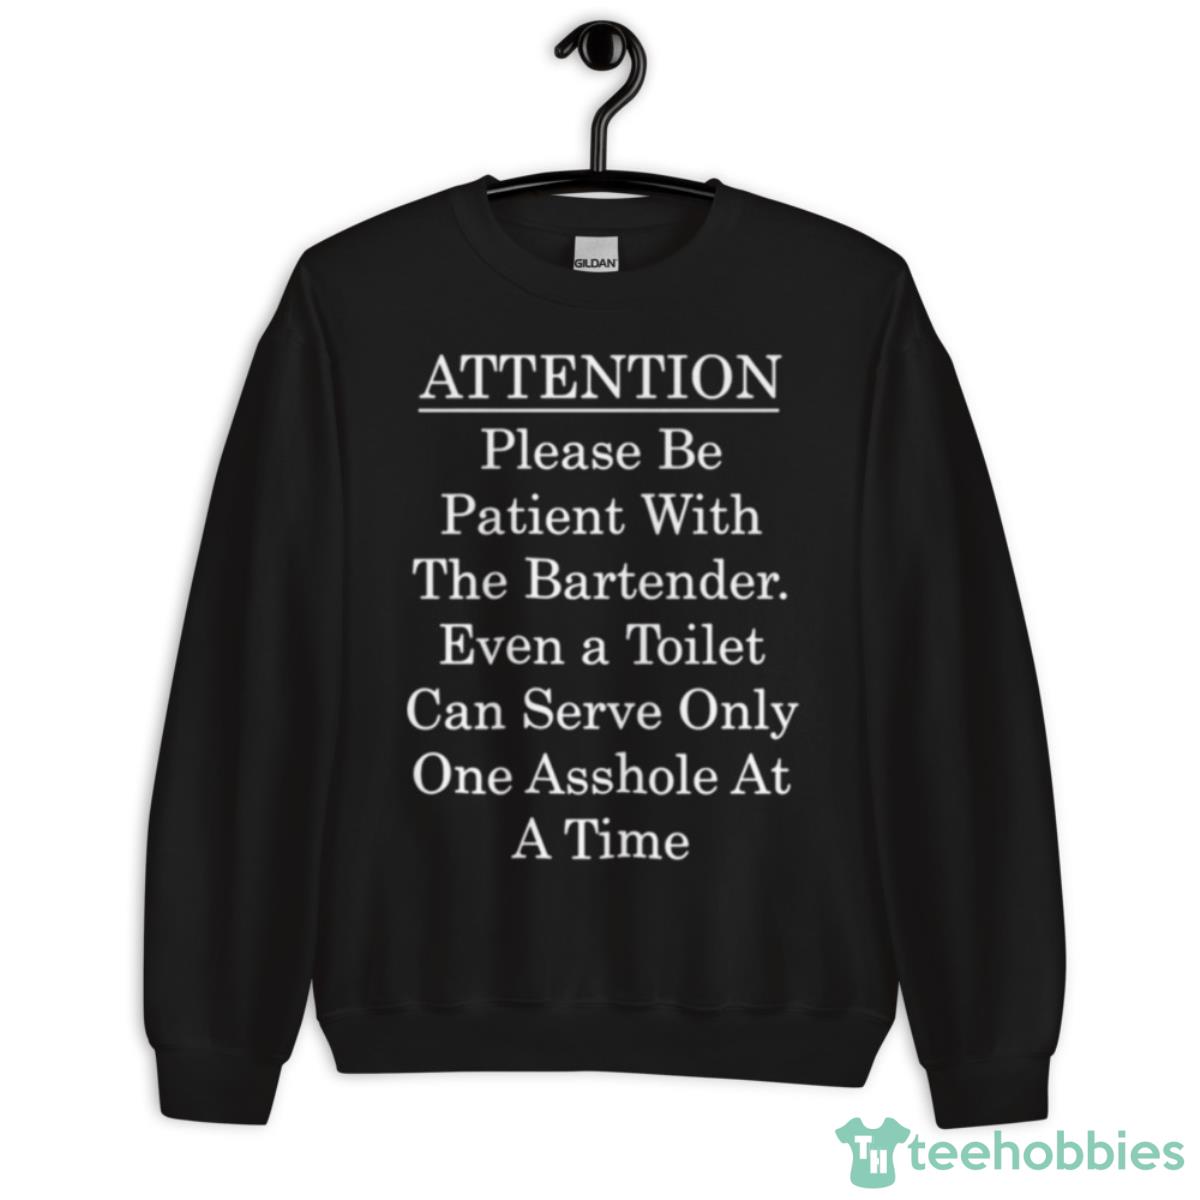 Attention Bartender Be Patient Shirt - Unisex Crewneck Sweatshirt